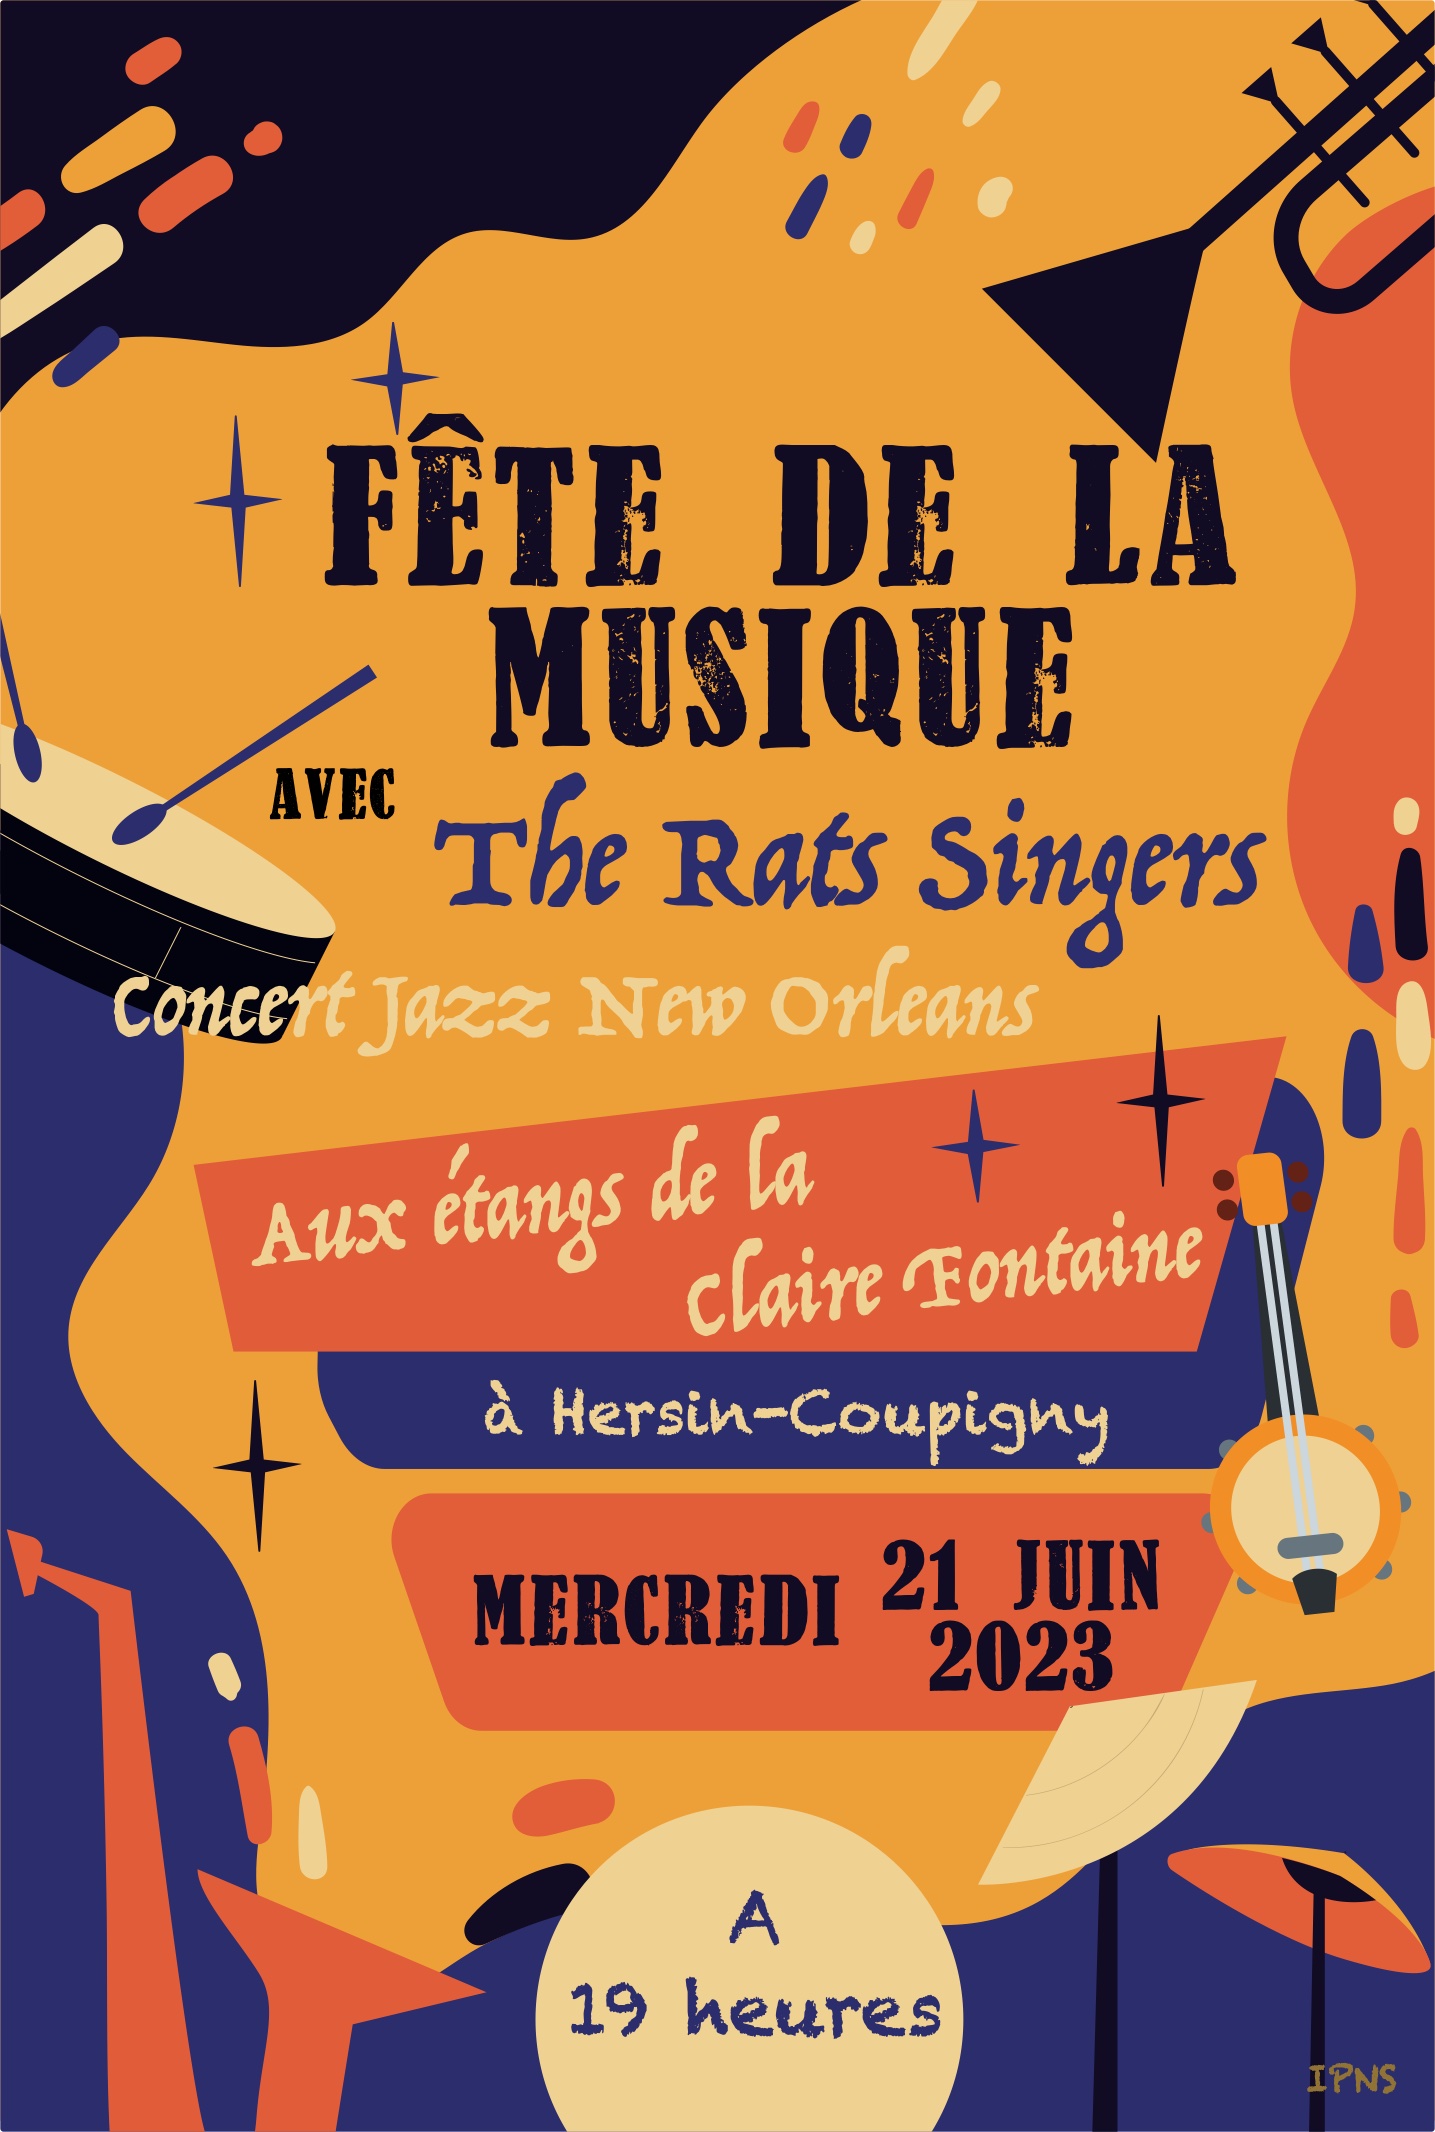 Fête de la Musique : Concert de jazz New Orléans @ aux étangs "La Claire Fontaine" | Hersin-Coupigny | Hauts-de-France | France